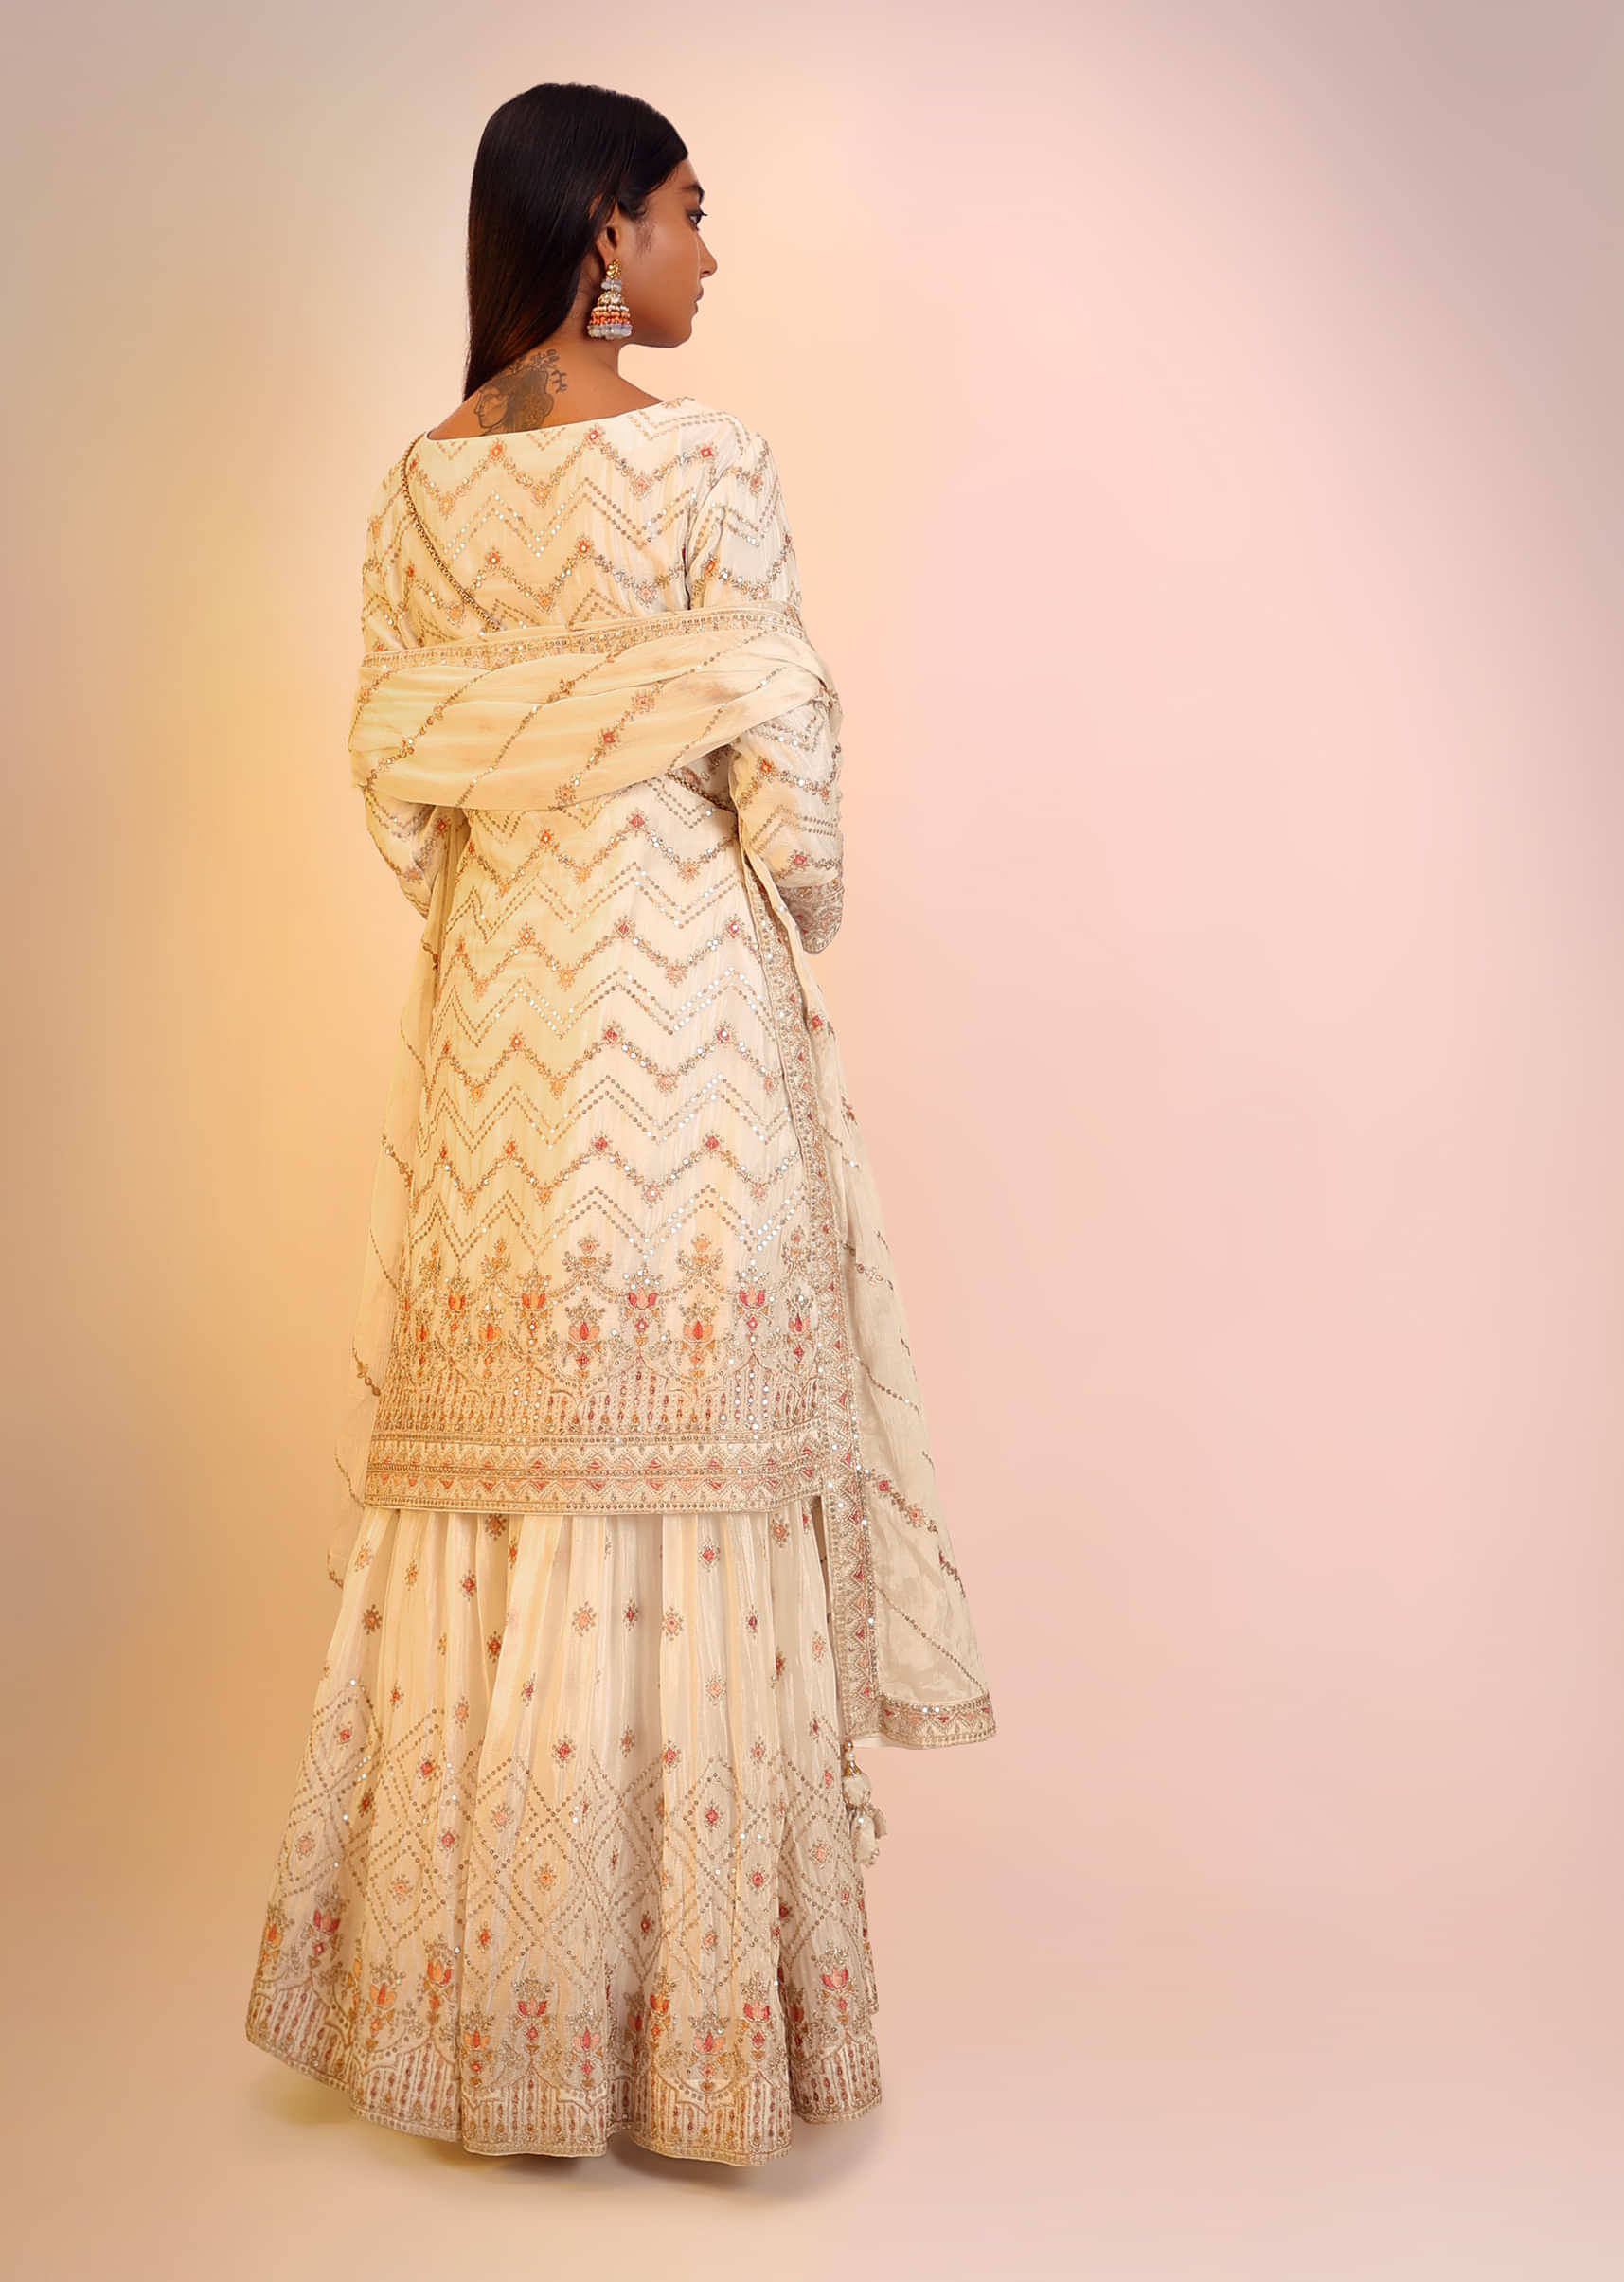 Off White Sharara Suit In Chinon Chiffon With Multi Colored Resham And Zari Embroidered Chevron Design